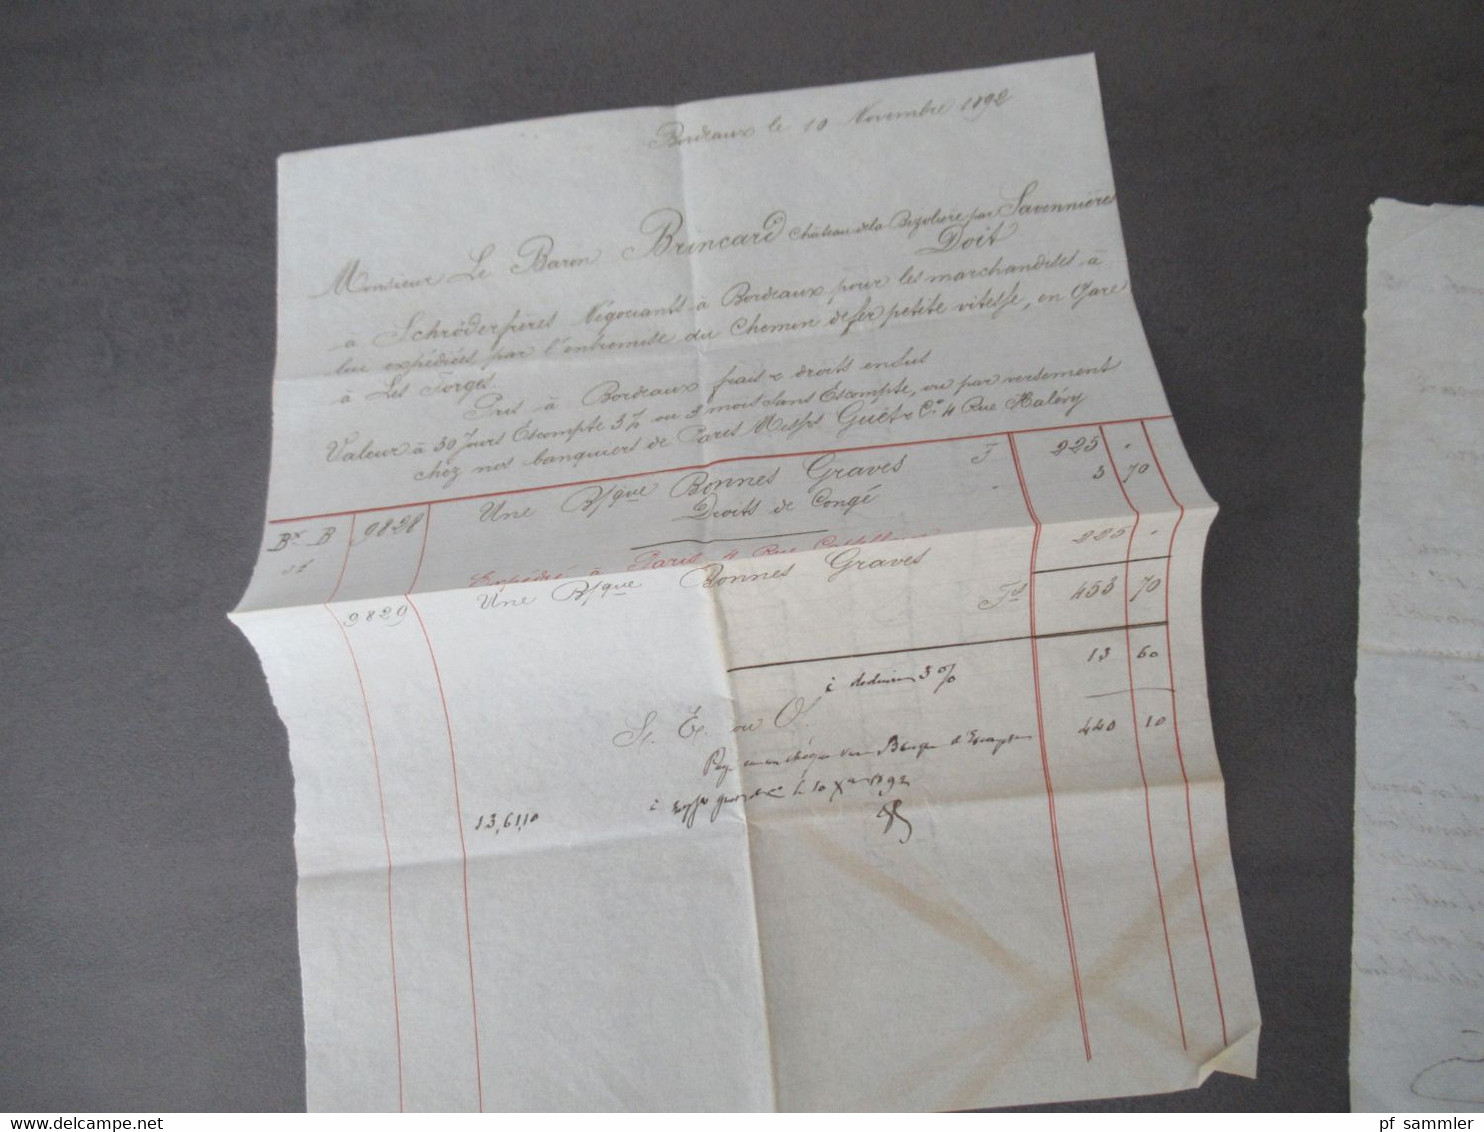 Frankreich 1892 Brief / Inhalt / Rechnung Briefkopf Schröder Freres Bordeaux an den Baron Brincard Chateau la Bizoliere